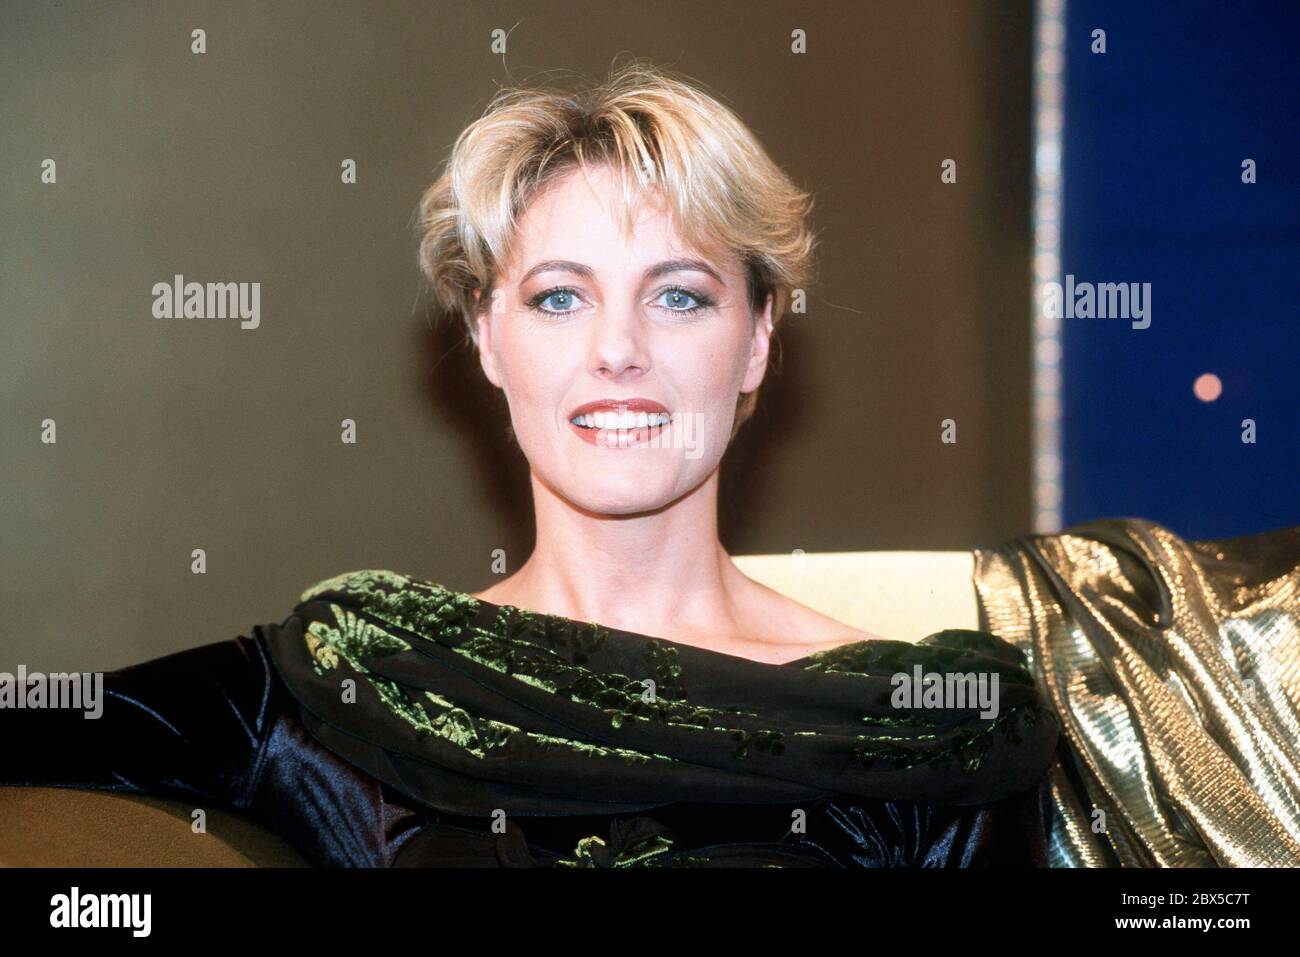 Porträt der Sängerin DANA WINNER, Deutschland um 2000. Portrait of the singer DANA WINNER, Germany around 2000. Stock Photo